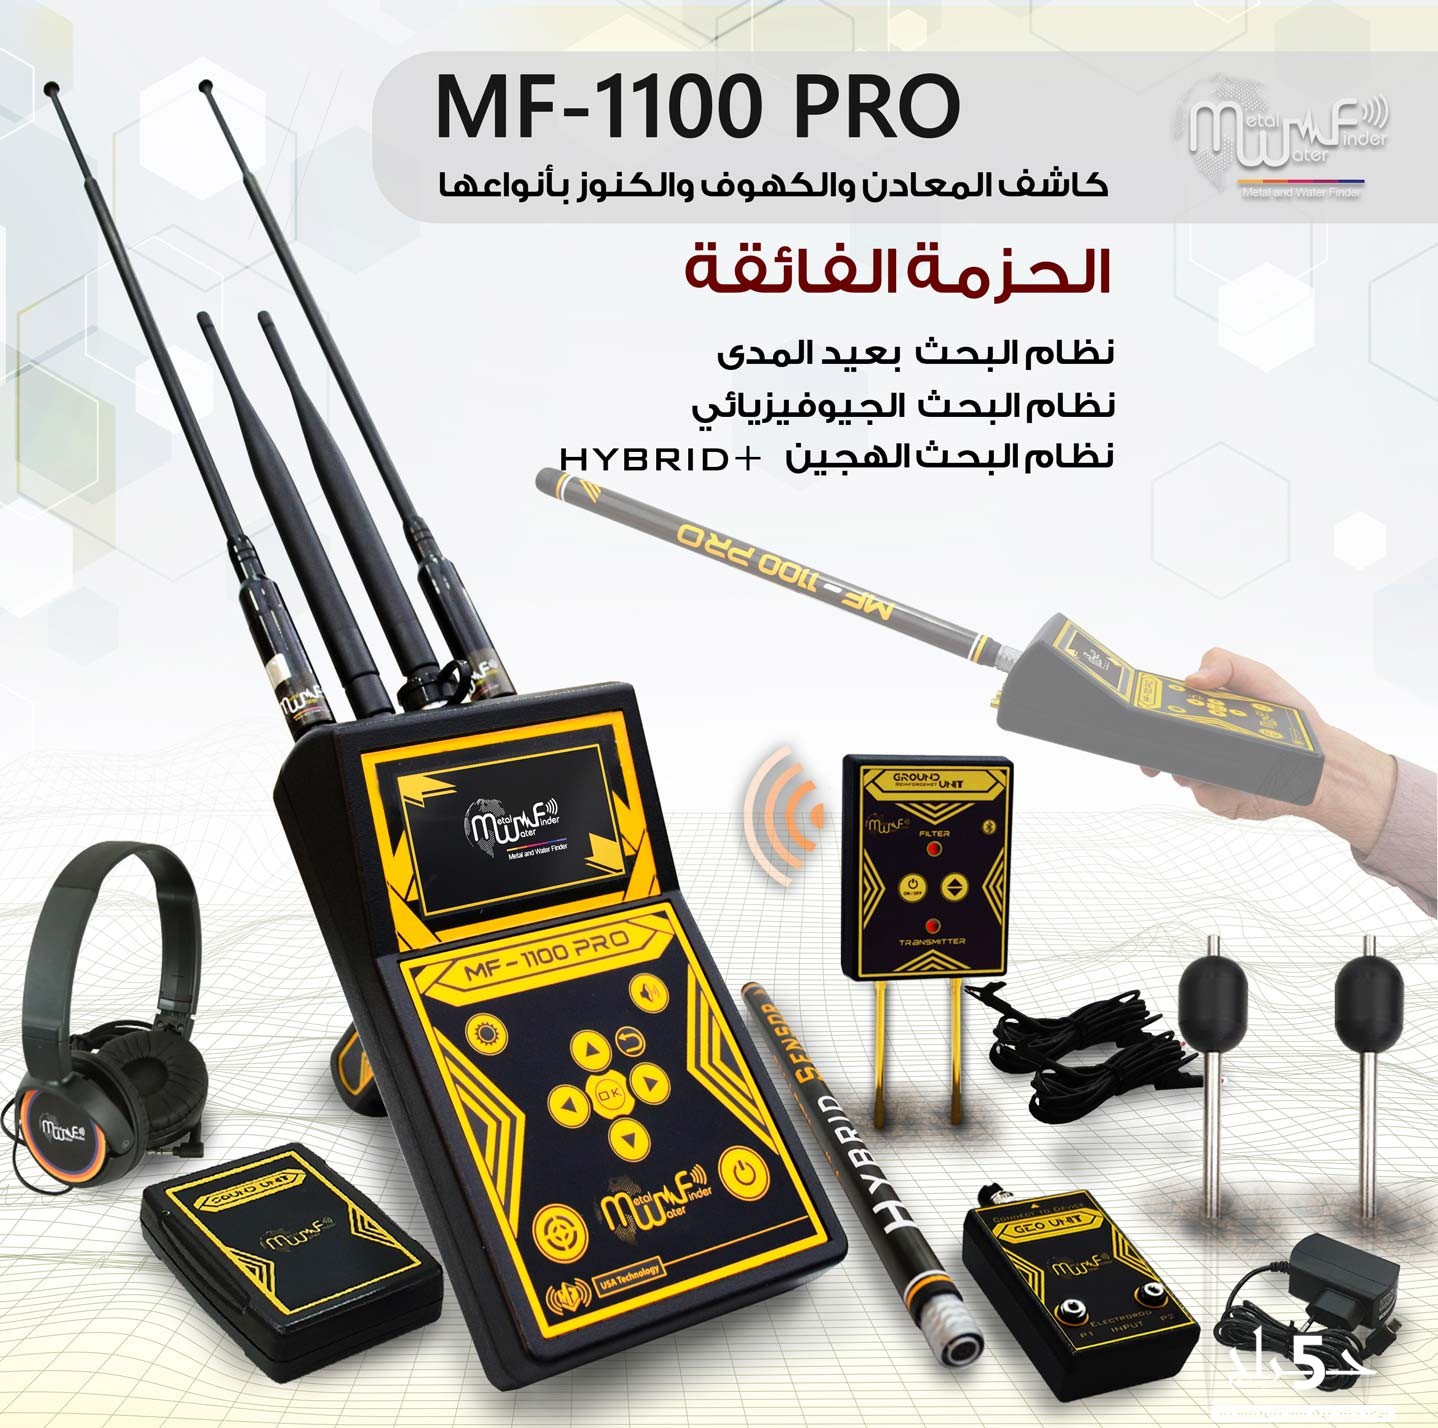 جهاز كشف الذهب والكنوز MF1100 PRO المتطور